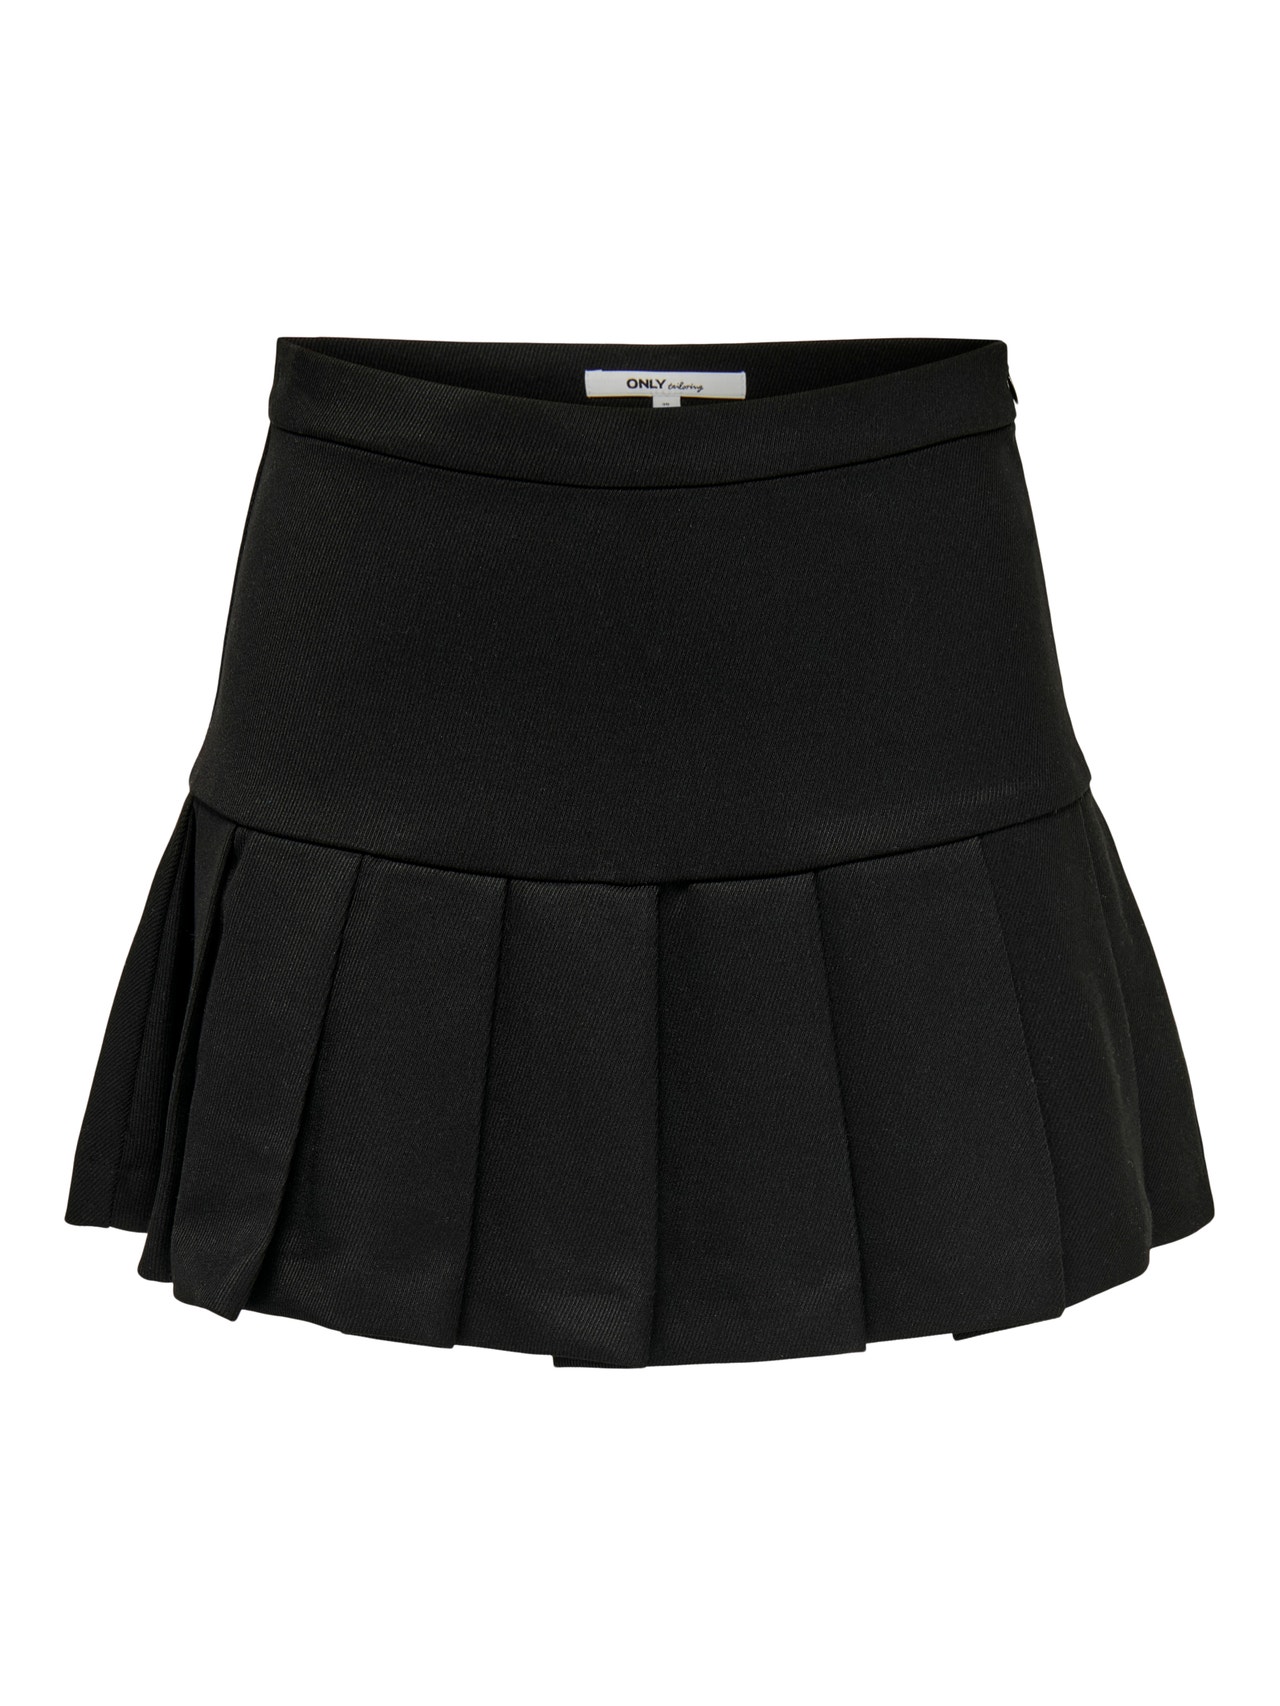 ONLY Petite Short skirt -Black - 15284664